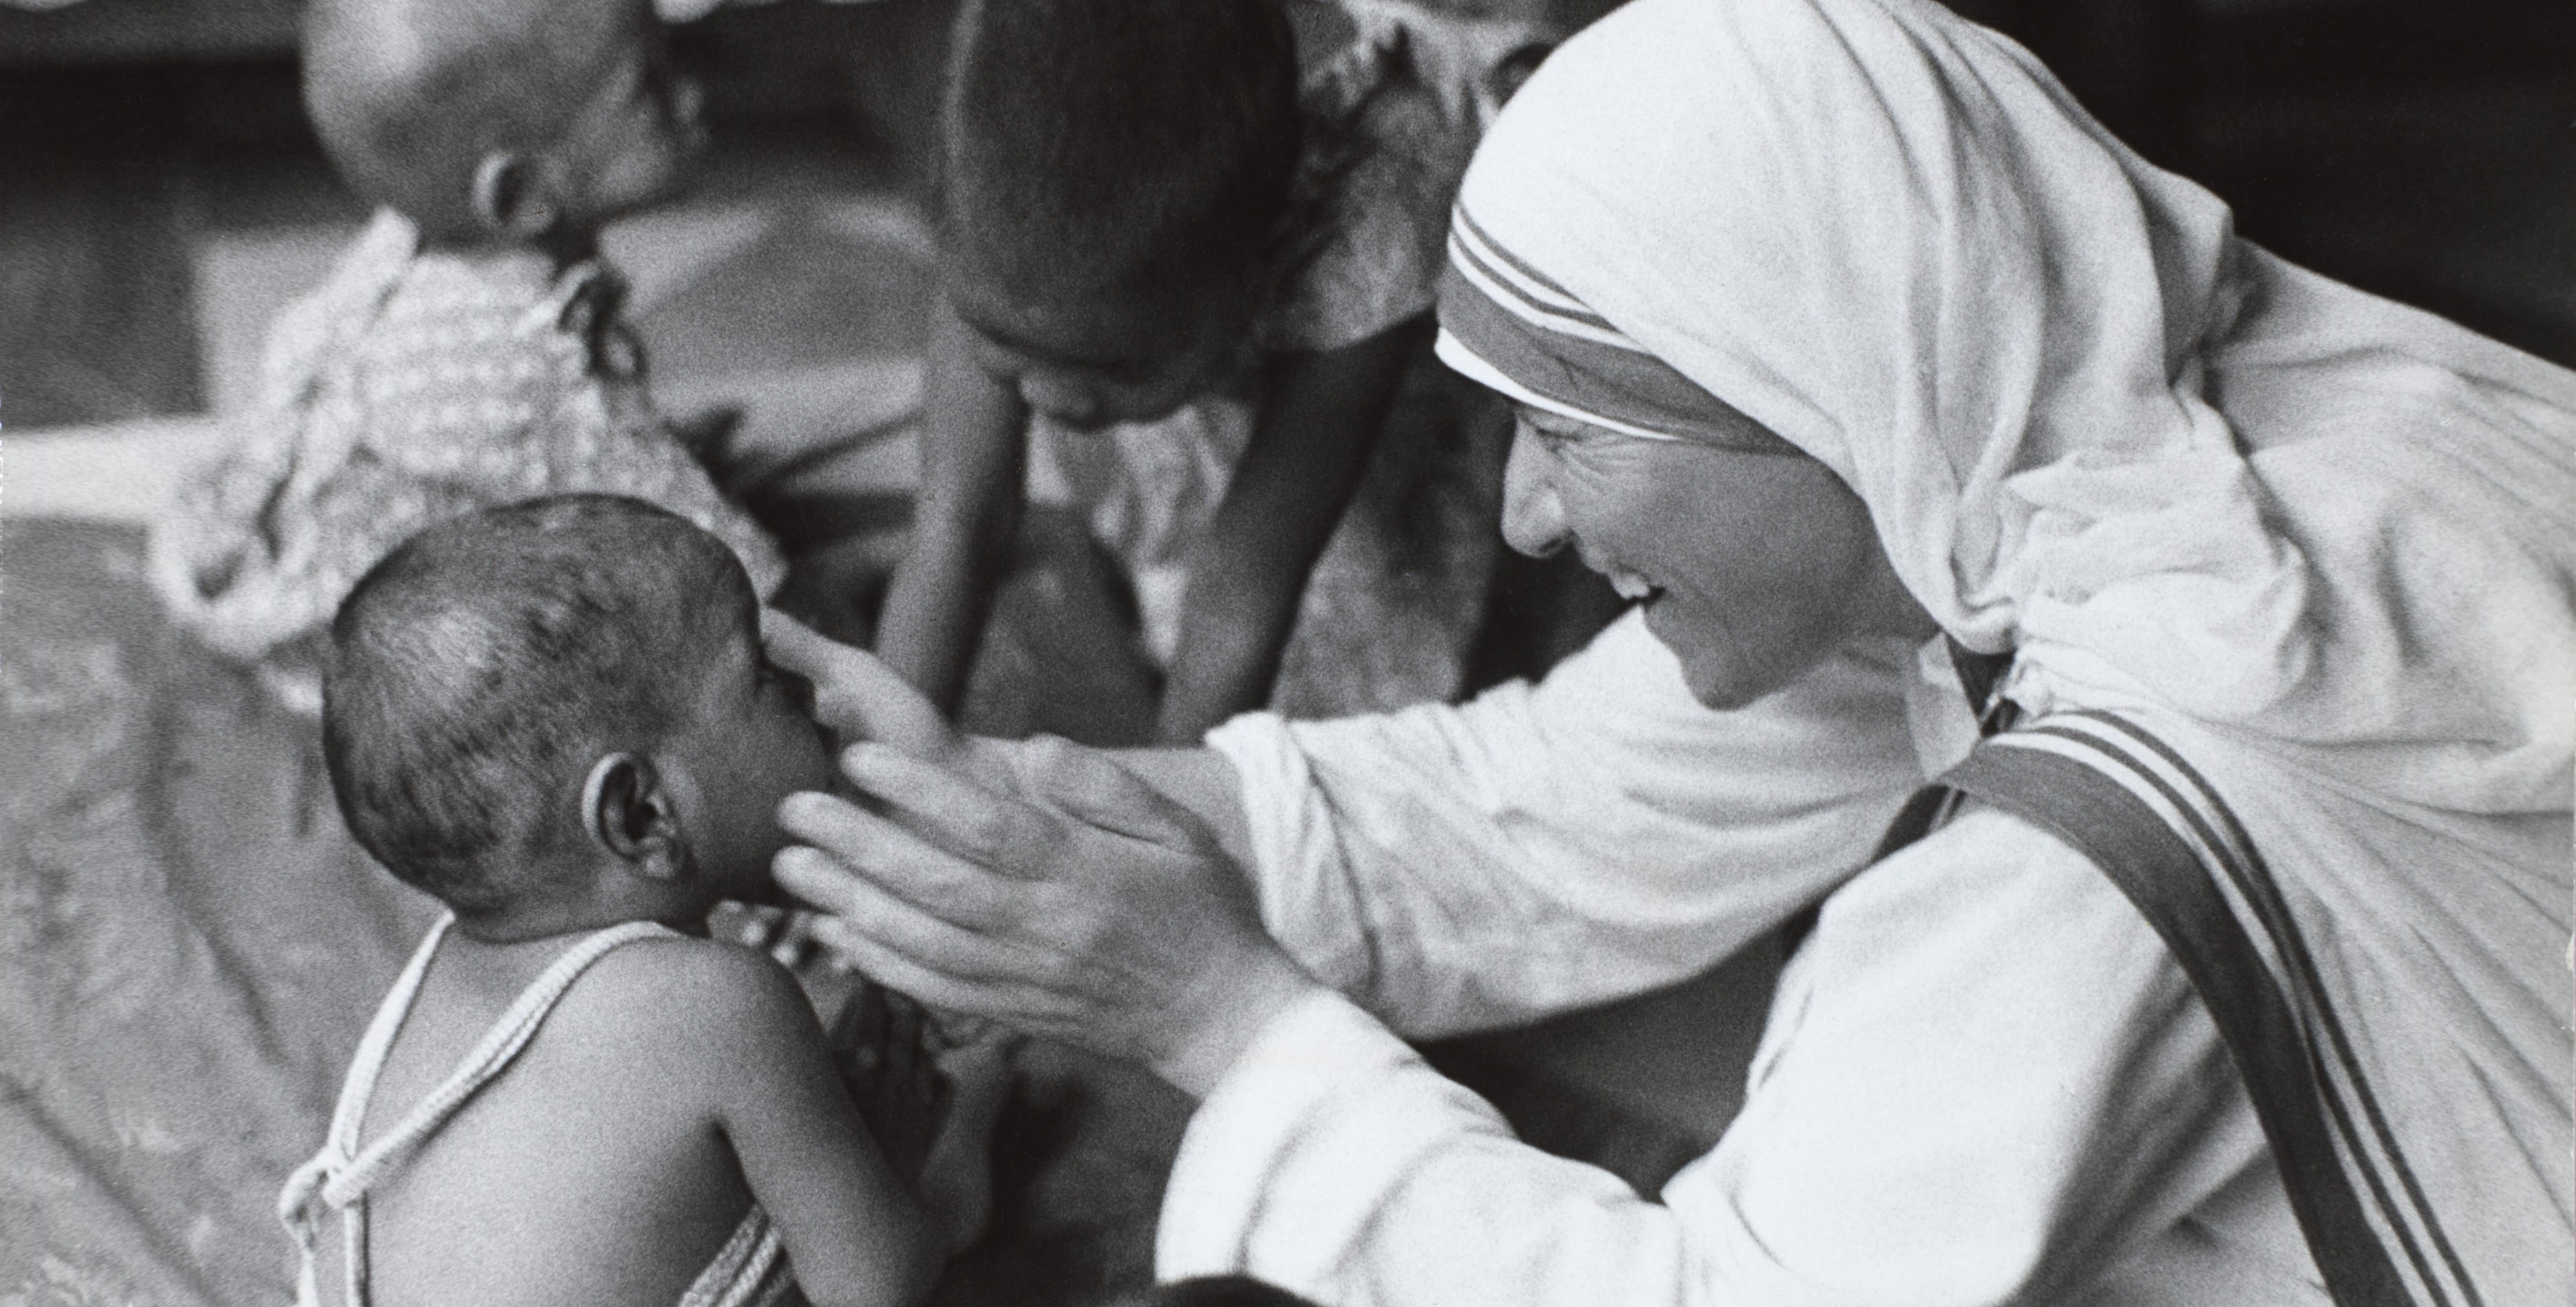 Madre Teresa de Calcutá foi quem mais cuidou dos pobres e defendeu for